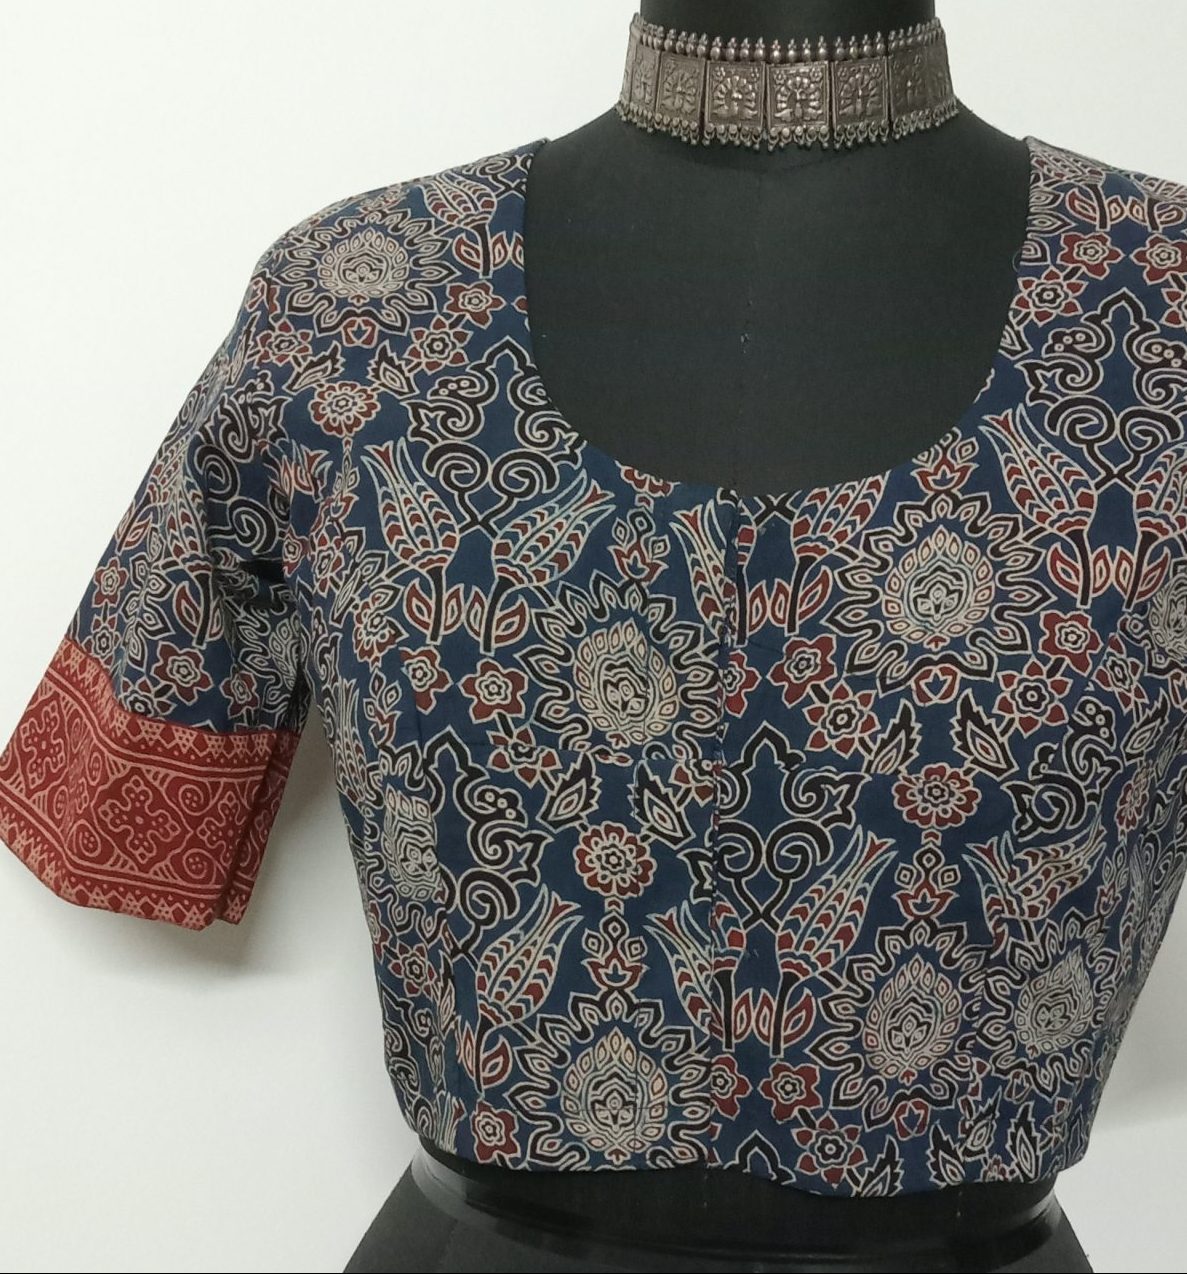 Printed indigo ajrakh blouse with maroon gamathi border sleeves